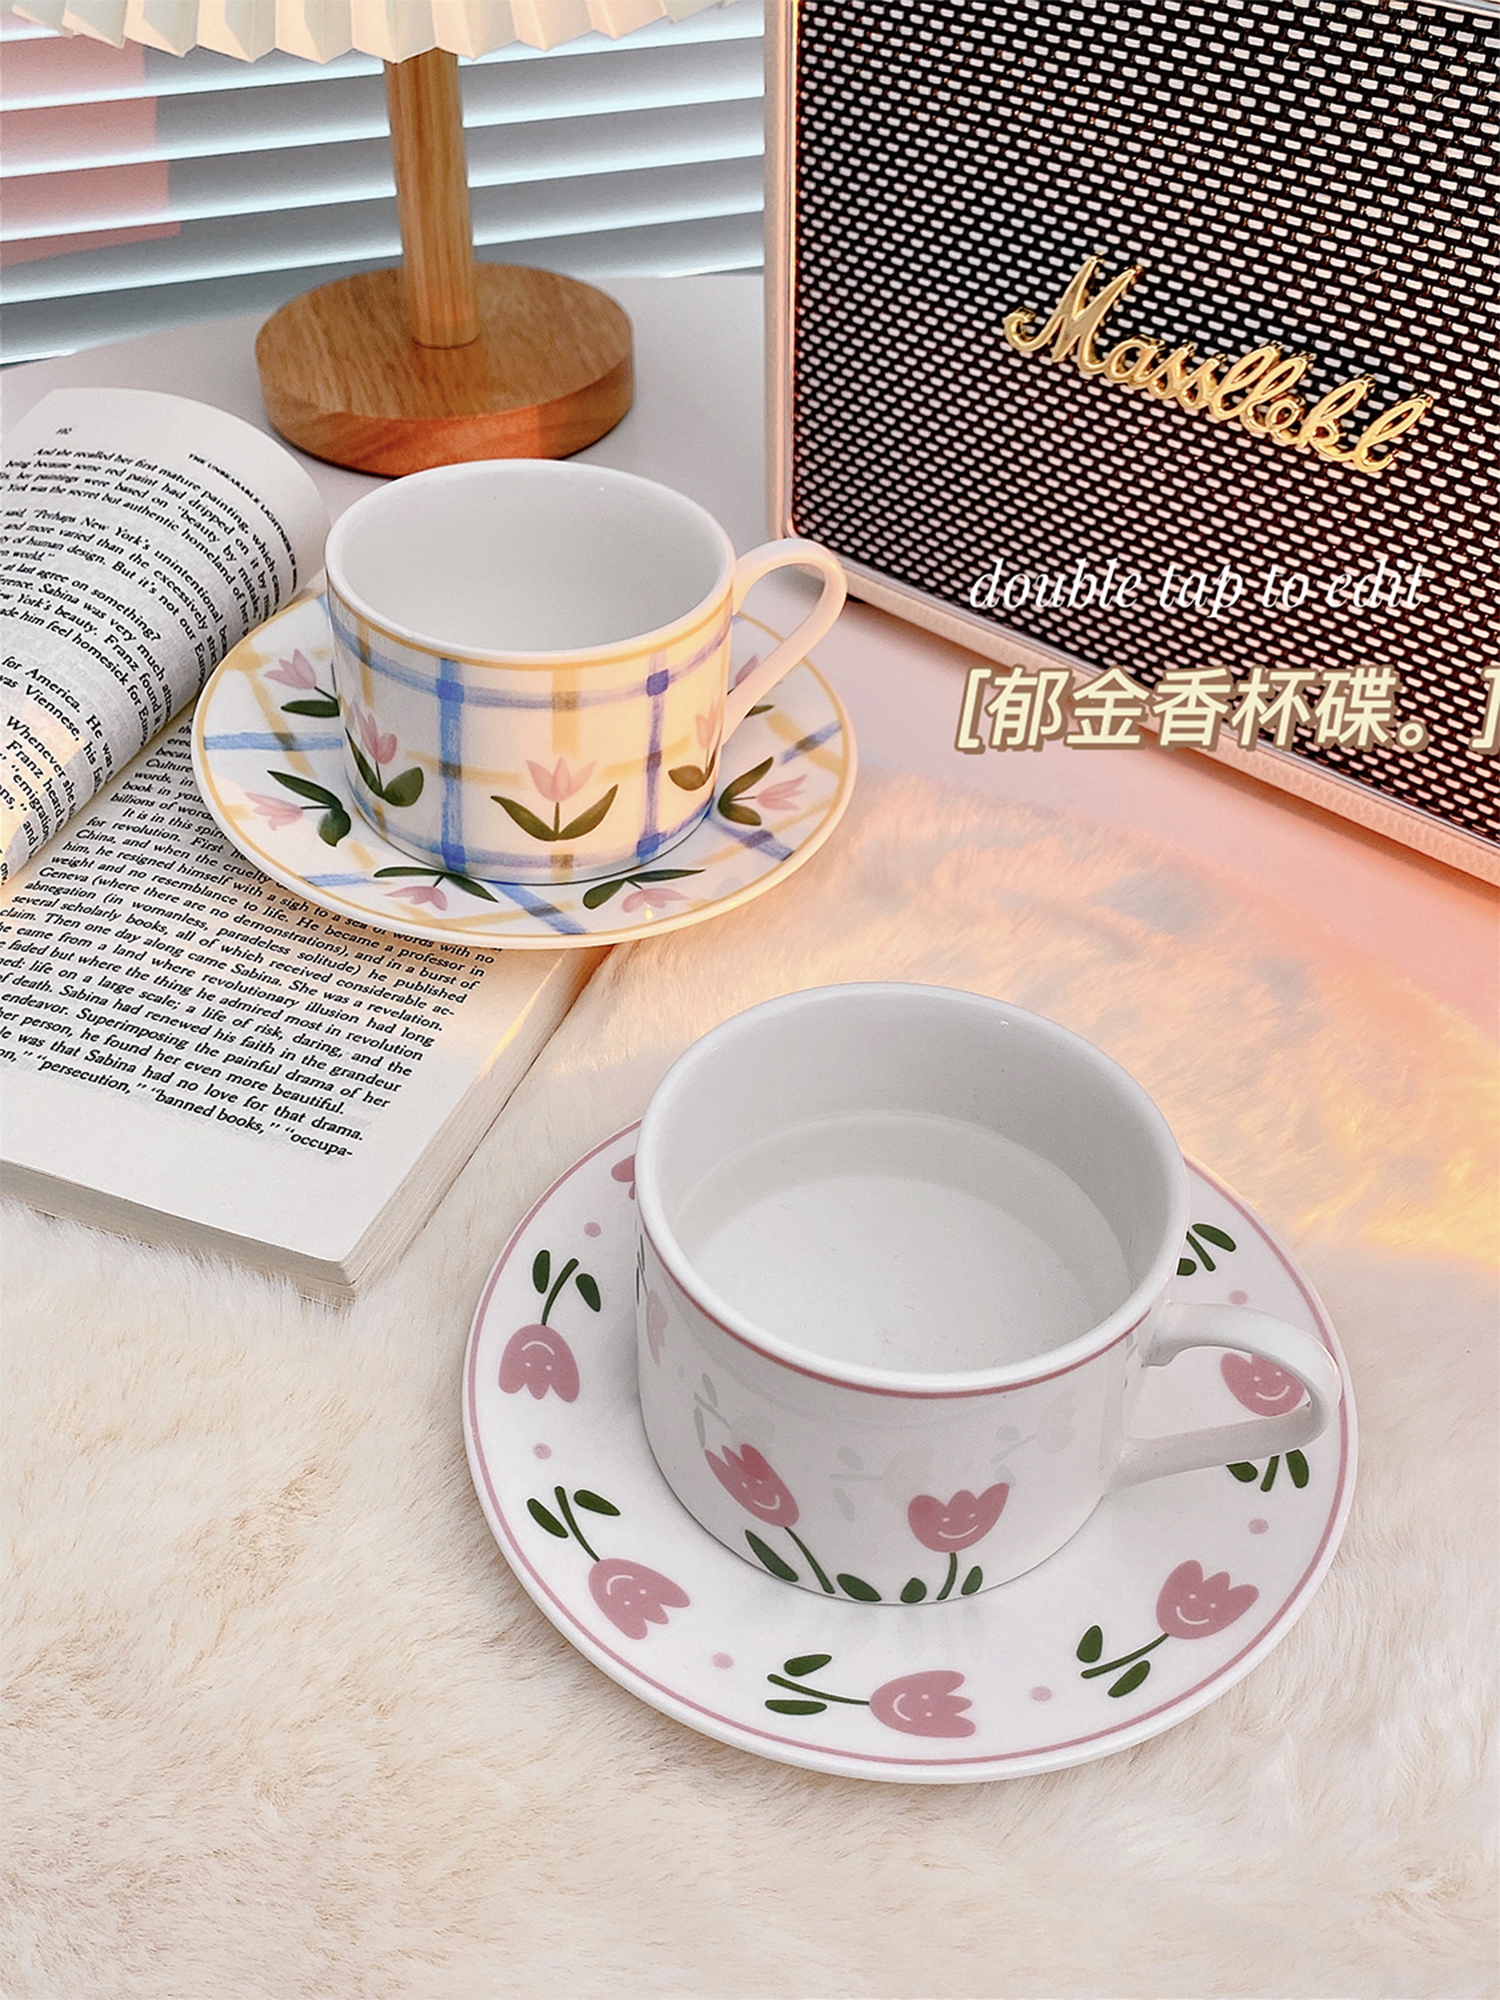 北歐風陶瓷鬱金香馬克杯 耐熱 辦公室宿舍下午茶咖啡杯 (8.3折)